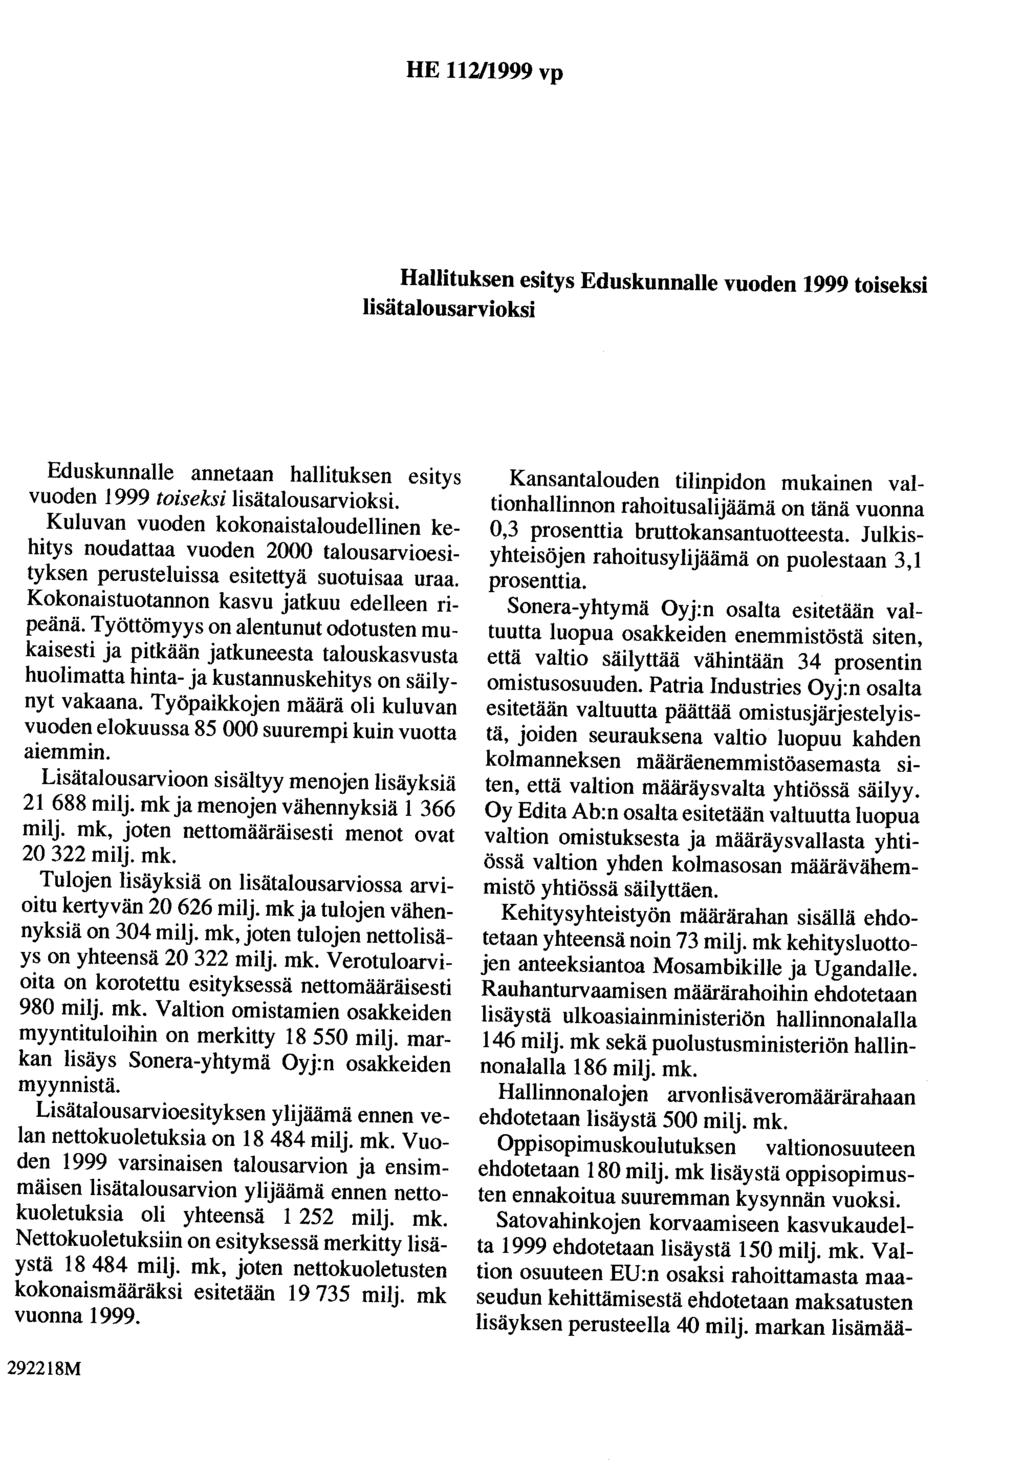 HE 112/1999 vp Hallituksen esitys Eduskunnalle vuoden 1999 toiseksi lisätalousarvioksi Eduskunnalle annetaan hallituksen esitys vuoden 1999 toiseksi lisätalousarvioksi.